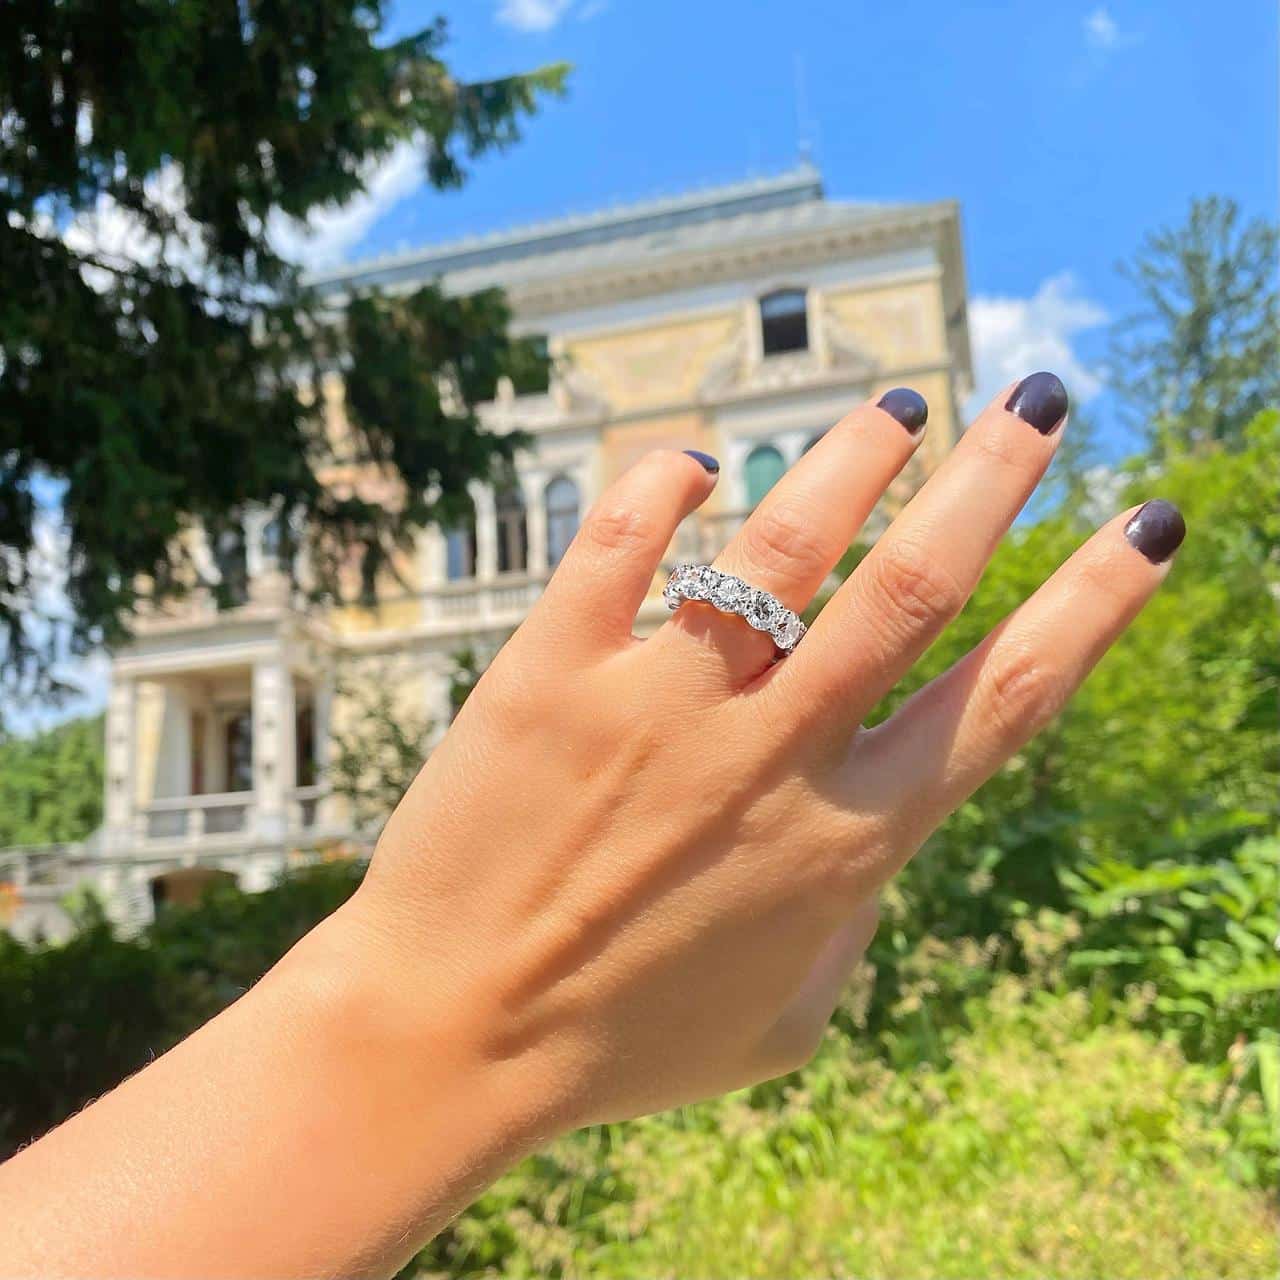 Allianzring mit grossen Steinen gefertigt aus Sterling Silber von Schweizer Schmuckmarke wird im Park der Villa Patumbah im Seefeld Zürich getragen